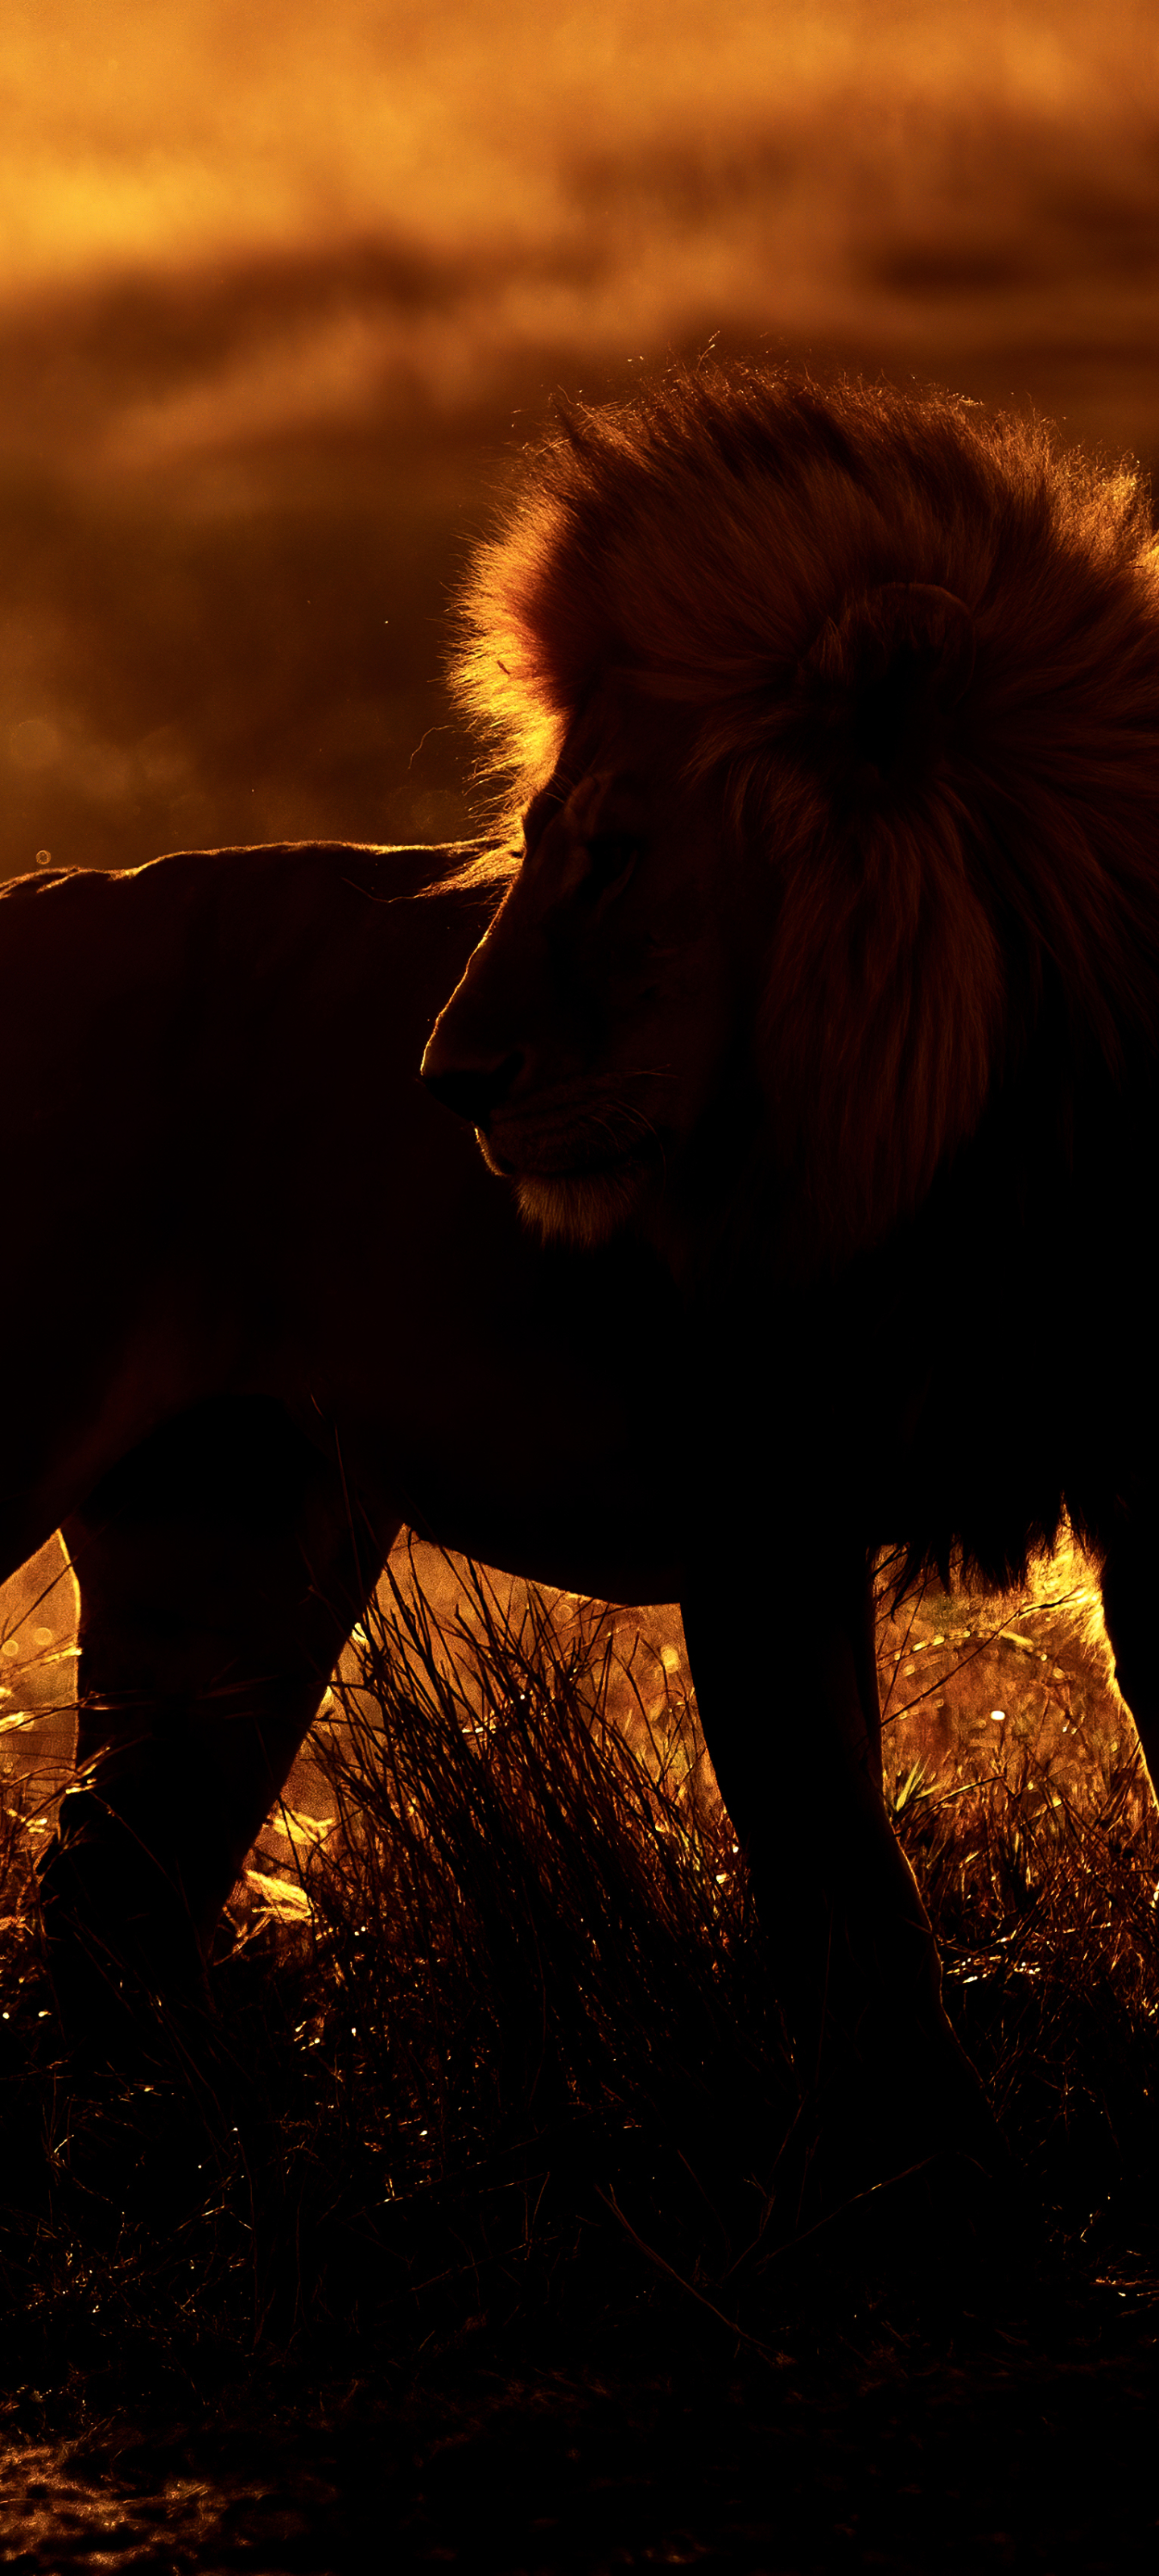 African Lion - Serengeti NP, Tanzania by Ankit Gita